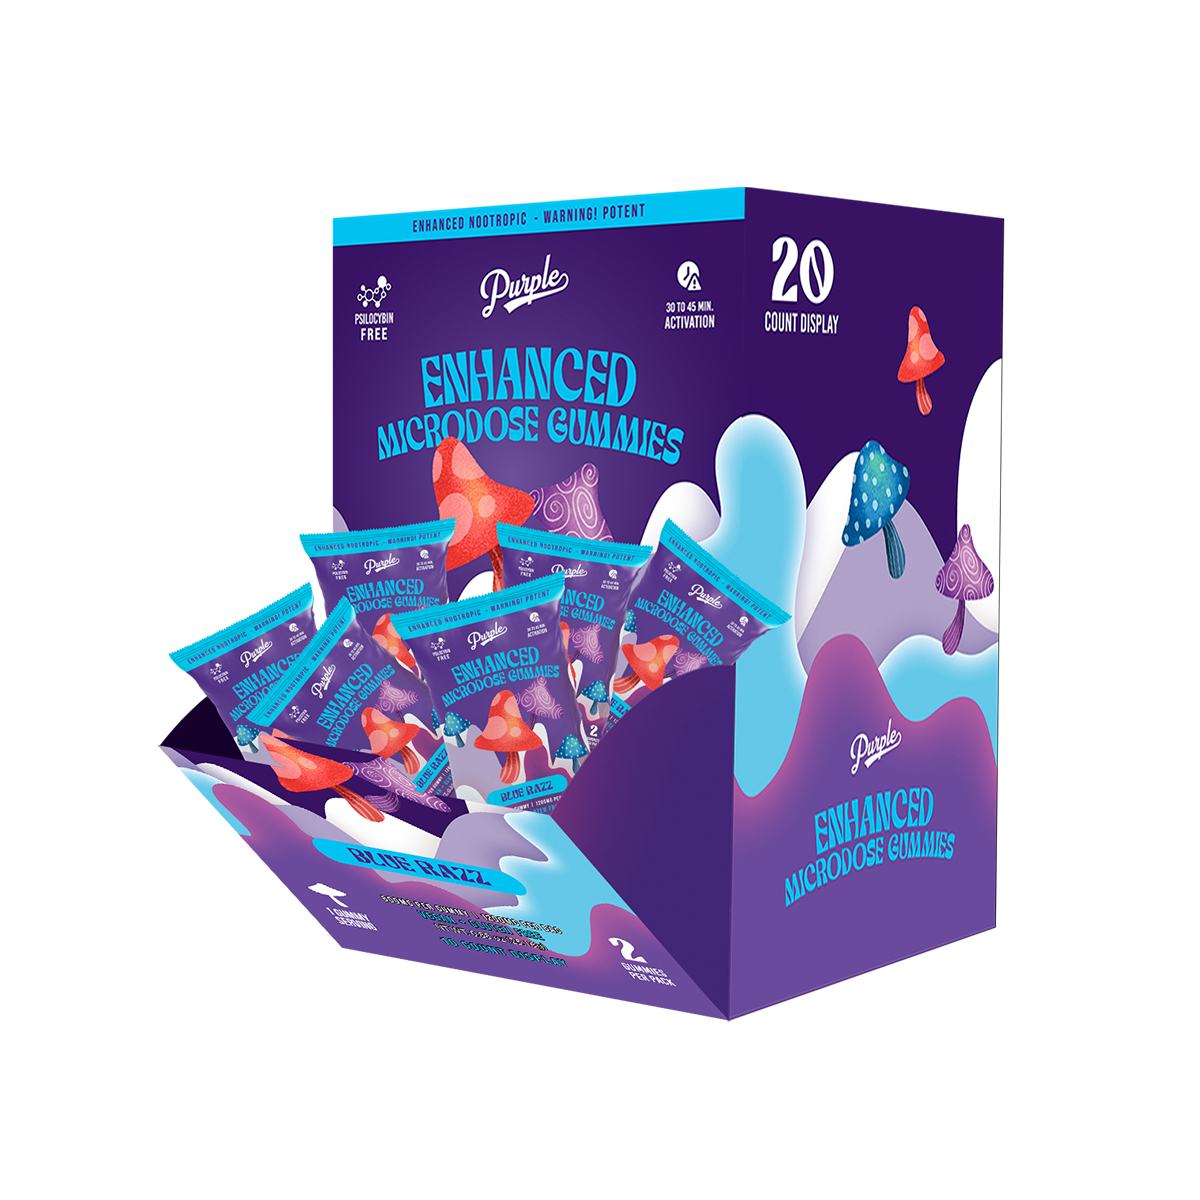 Purple Mushroom Enhanced Microdose Gummies | Blue Razz